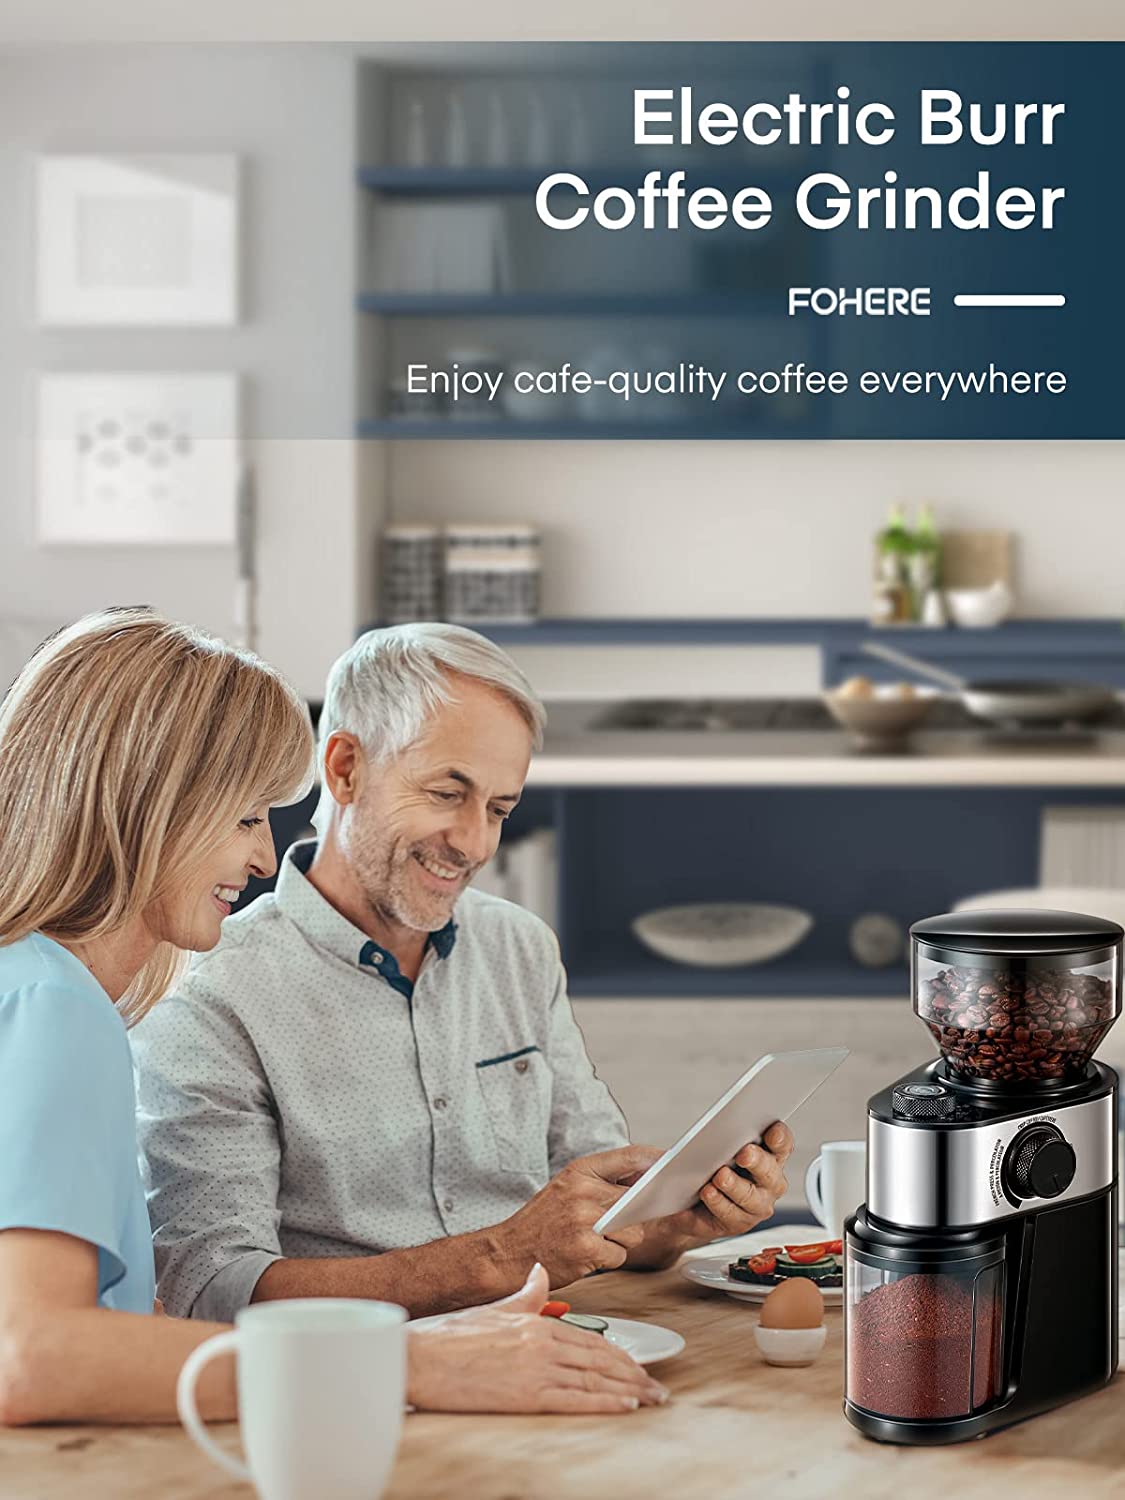 Mr. Coffee Electric Coffee Grinder Coffee Bean Grinder| Spice Grinder, Black